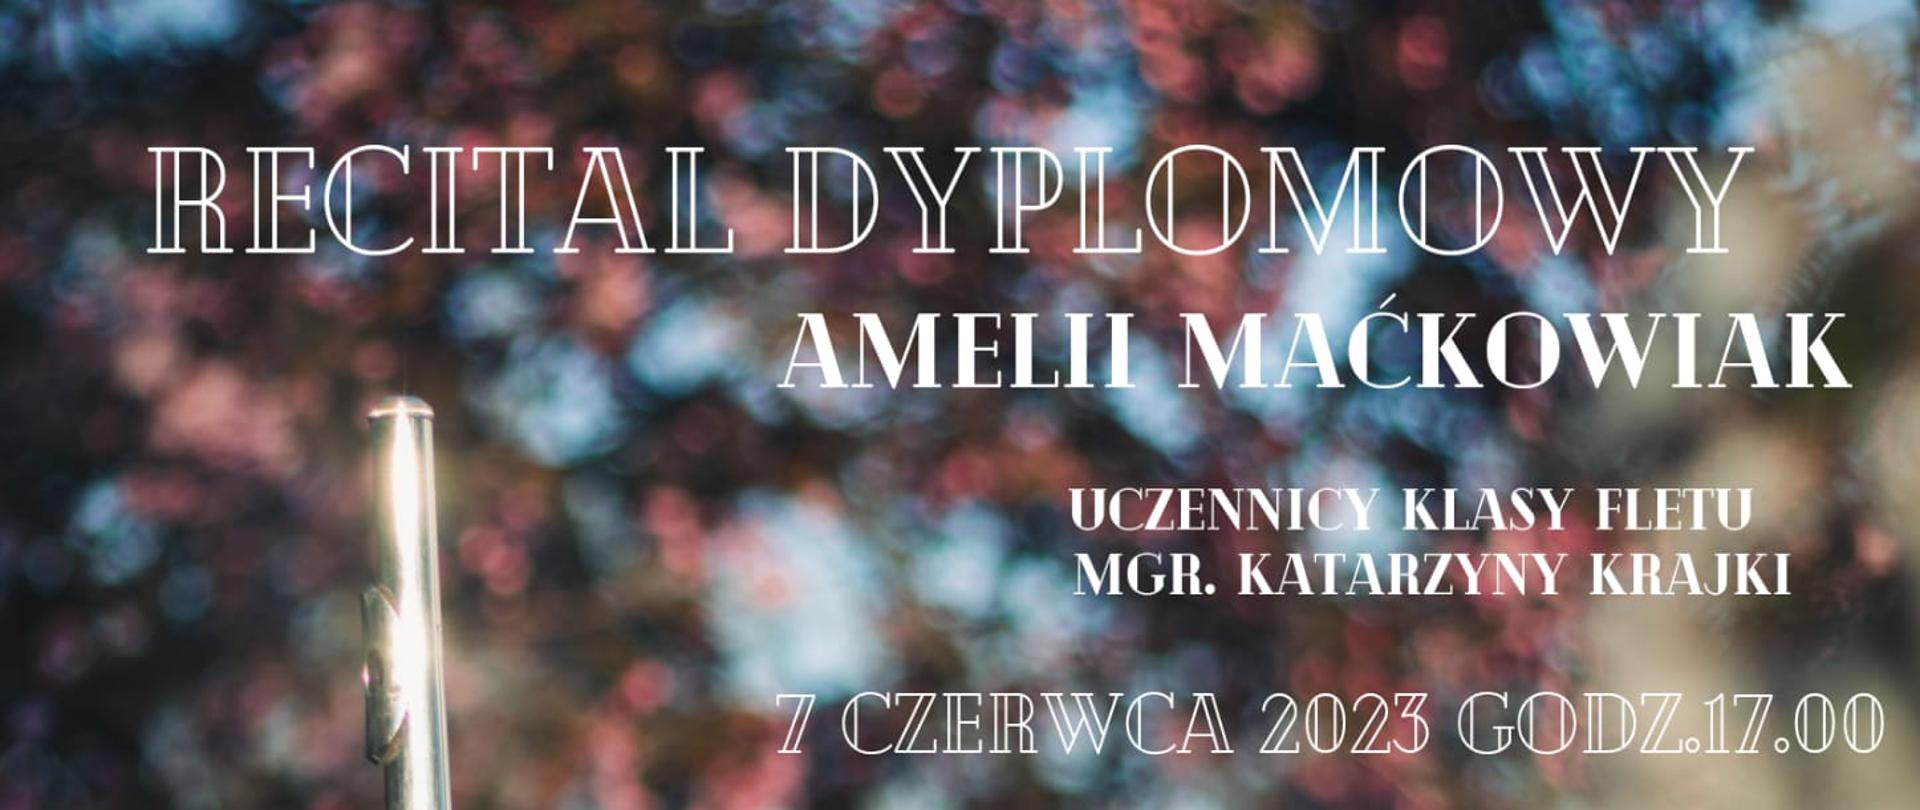 Plakat informujący o recitalu dyplomowym Amelii Maćkowiak - uczennicy klasy fletu klasy mgr Katarzyny Krajki w dniu 7 czerwca 2023 o godzinie 17.00. Na zdjęciu pośród kwitnących kwiatów jabłoni znajduje się uczennica trzymająca flet.